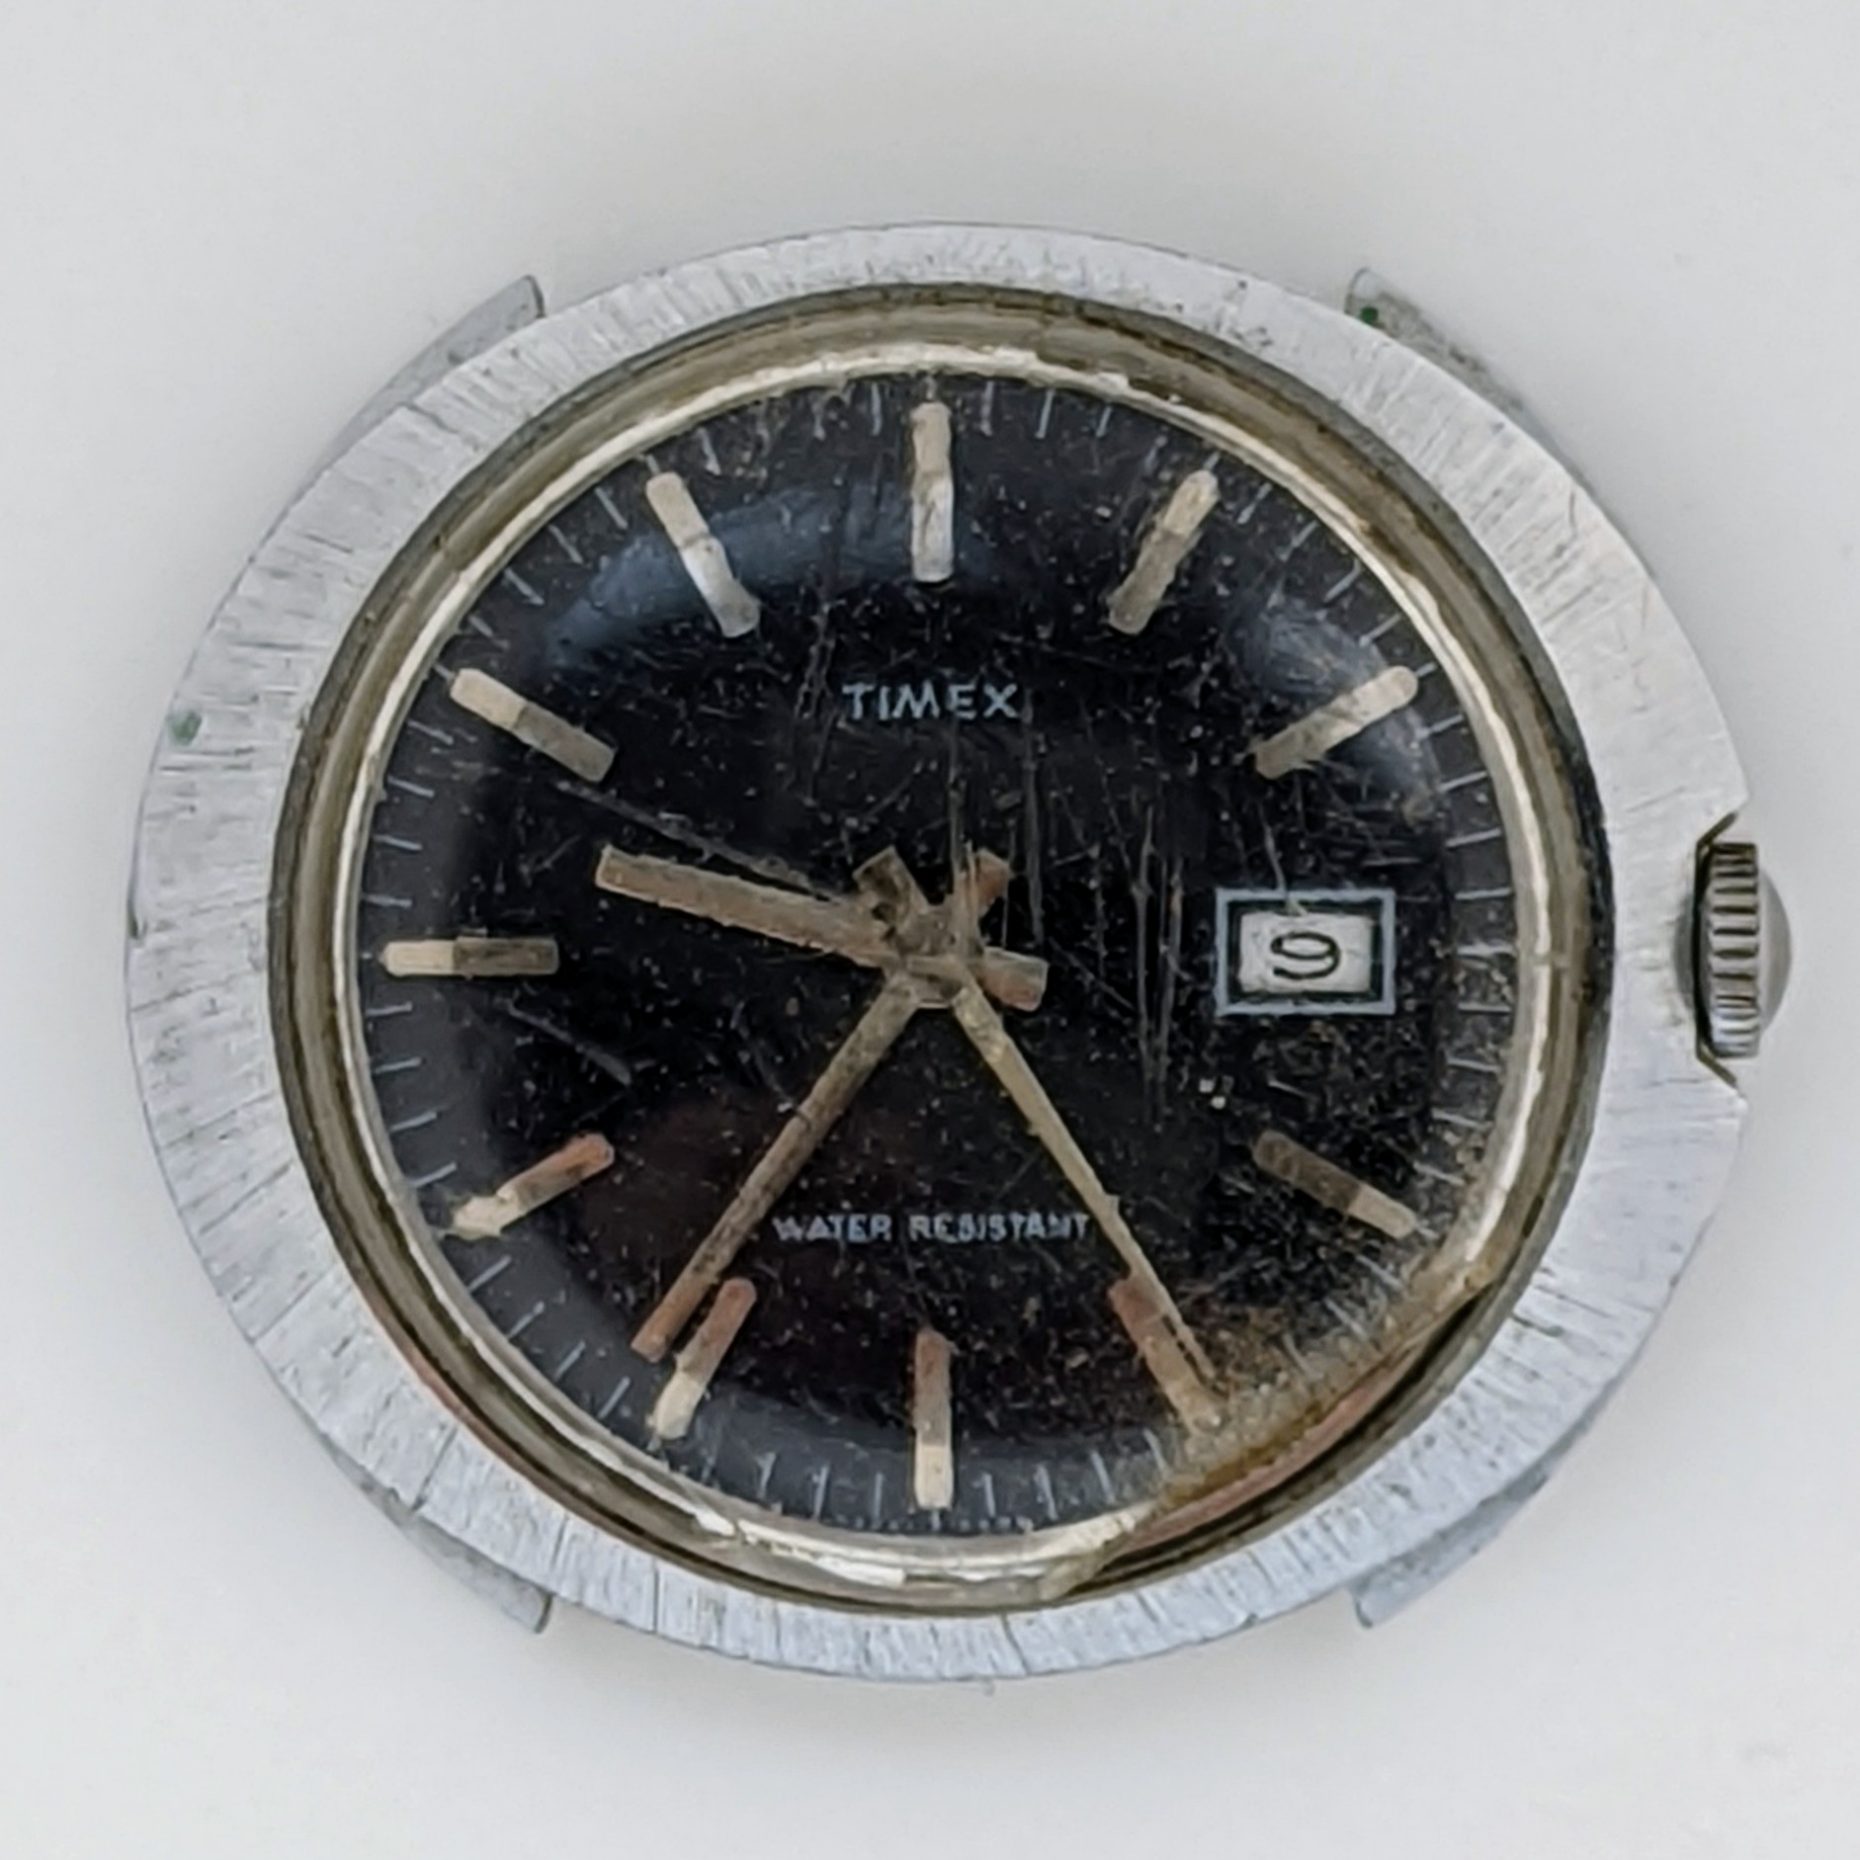 Timex Marlin 26651 2571 [1971]